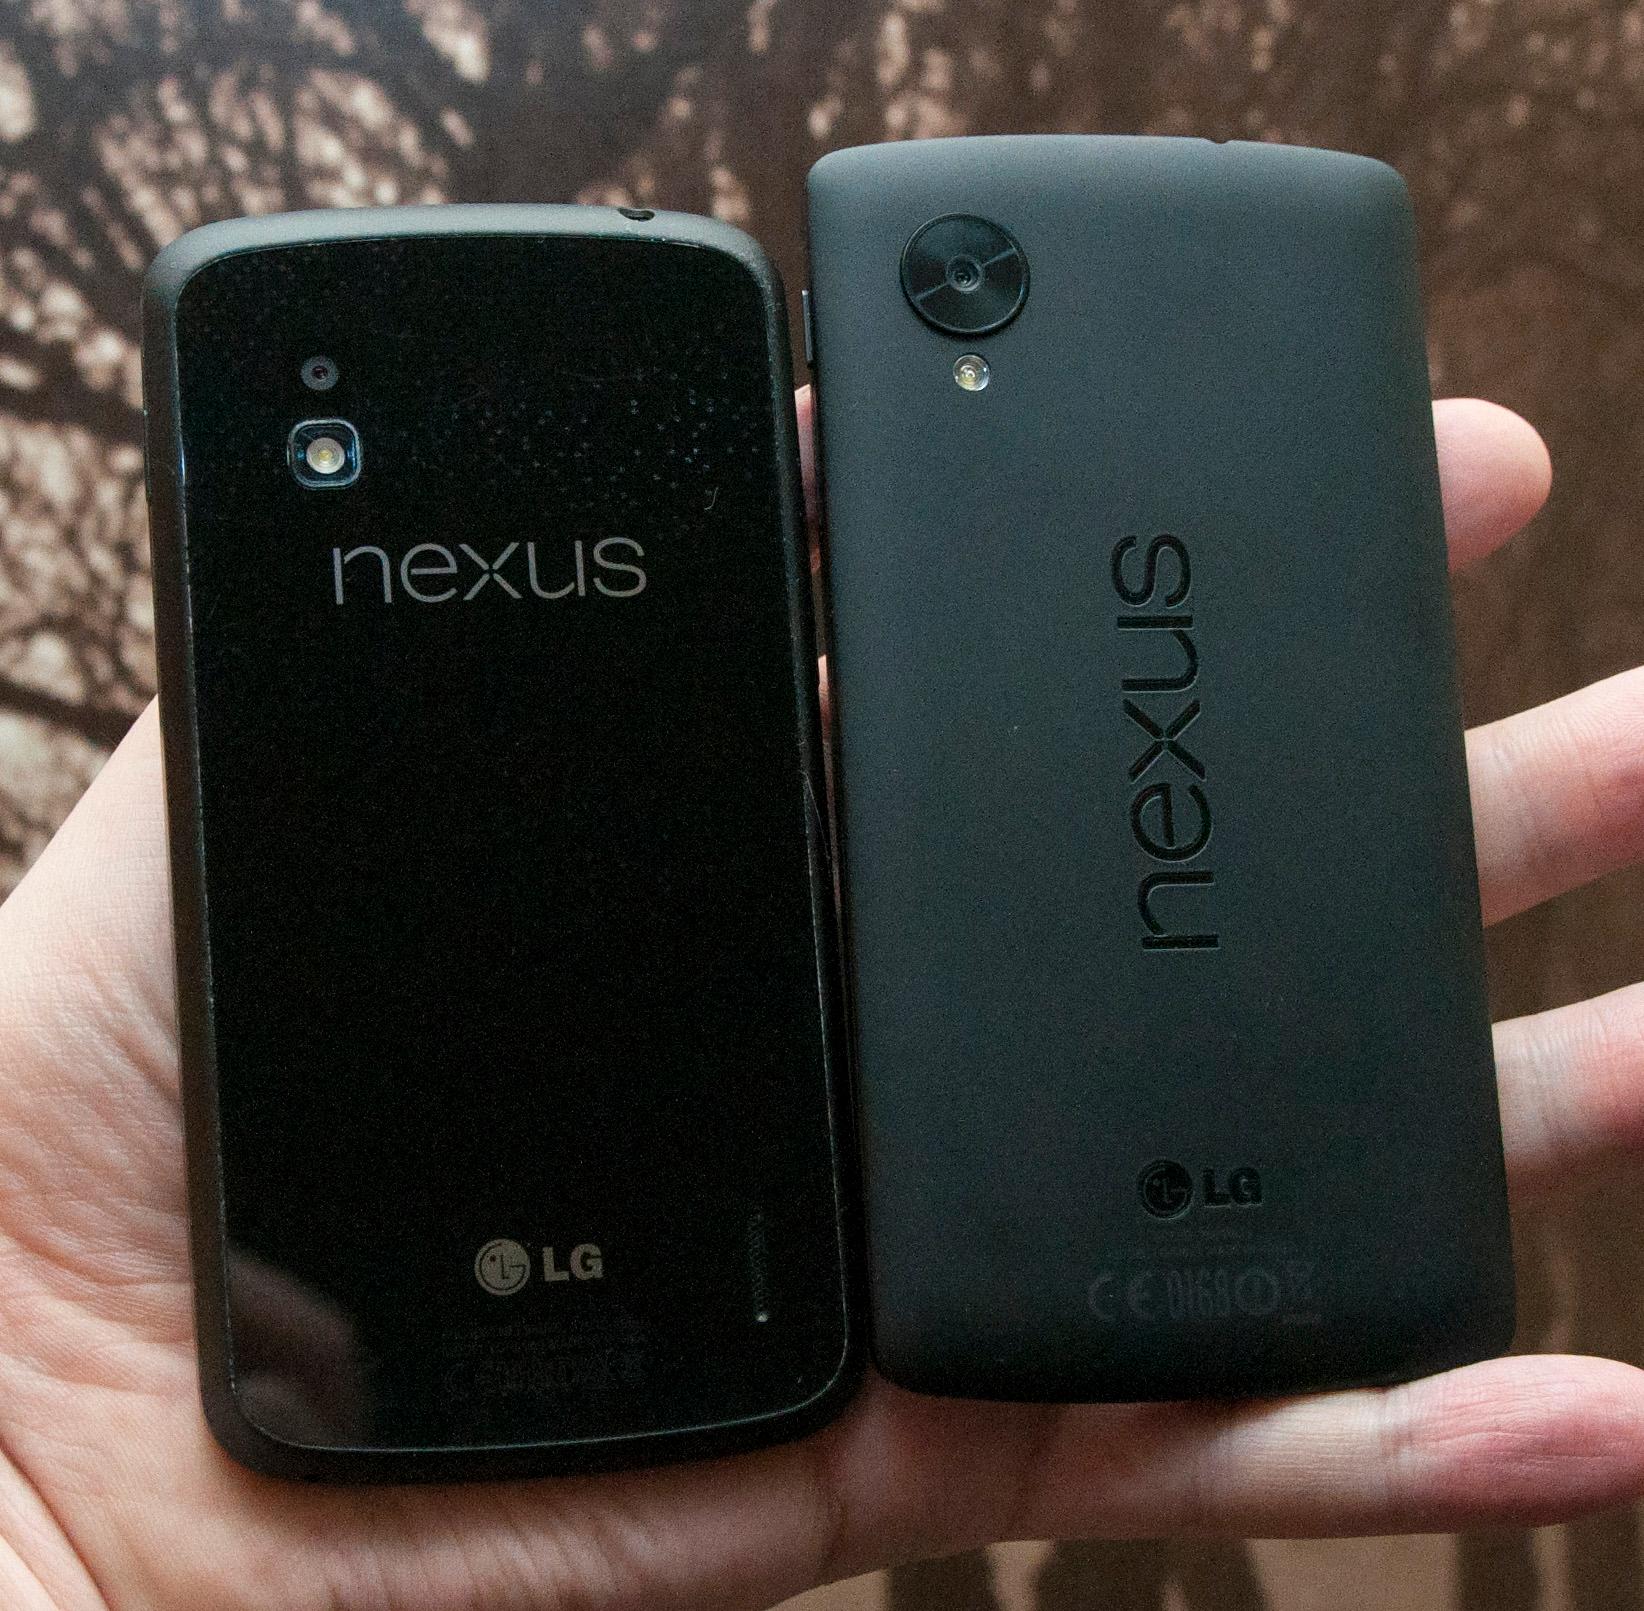 Baksiden på Nexus 5 er i plast. Det gjør den hakket mindre knuselig enn Nexus 4, som har bakside i glass.Foto: Finn Jarle Kvalheim, Amobil.no